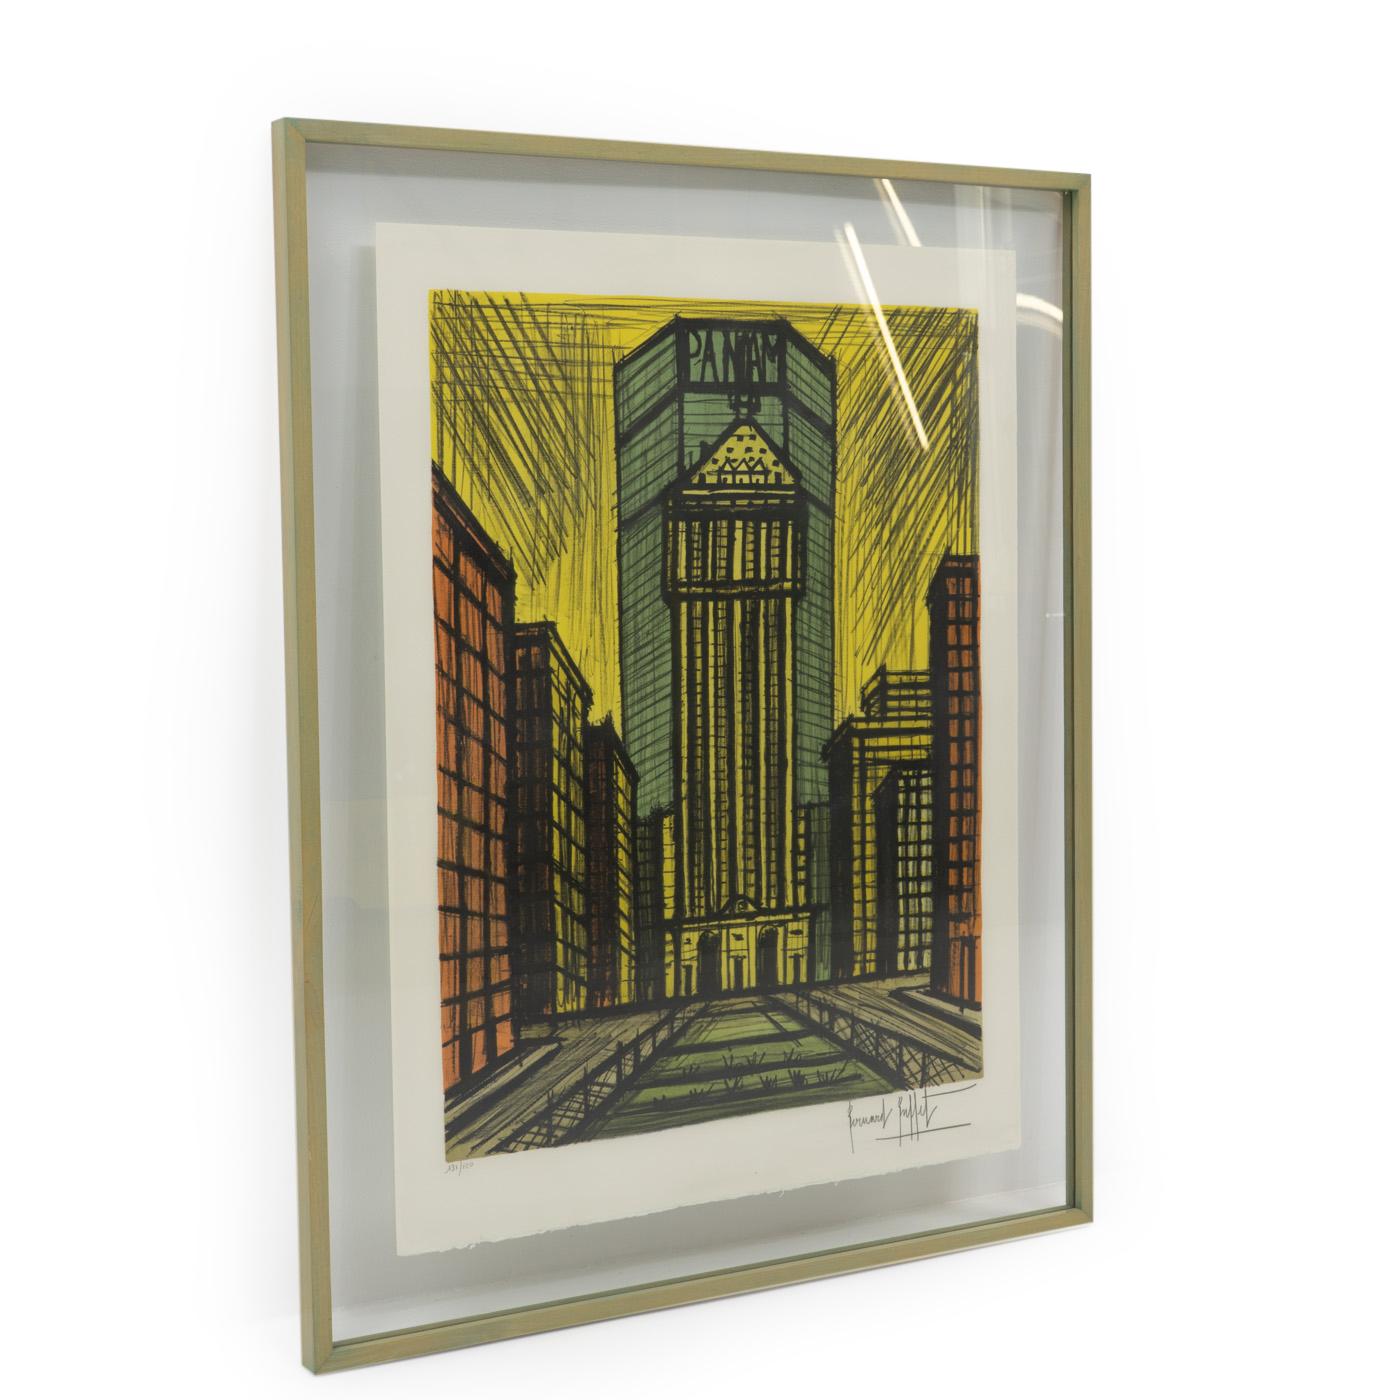 Seltene Farblithografie von Bernard Buffet ( 1928 - 1999), die das Panam-Gebäude in New York City zeigt. Die Lithographie ist in ausgezeichnetem Zustand, professionell gerahmt und vom Künstler signiert und nummeriert. 


Über den Künstler:

Bernard